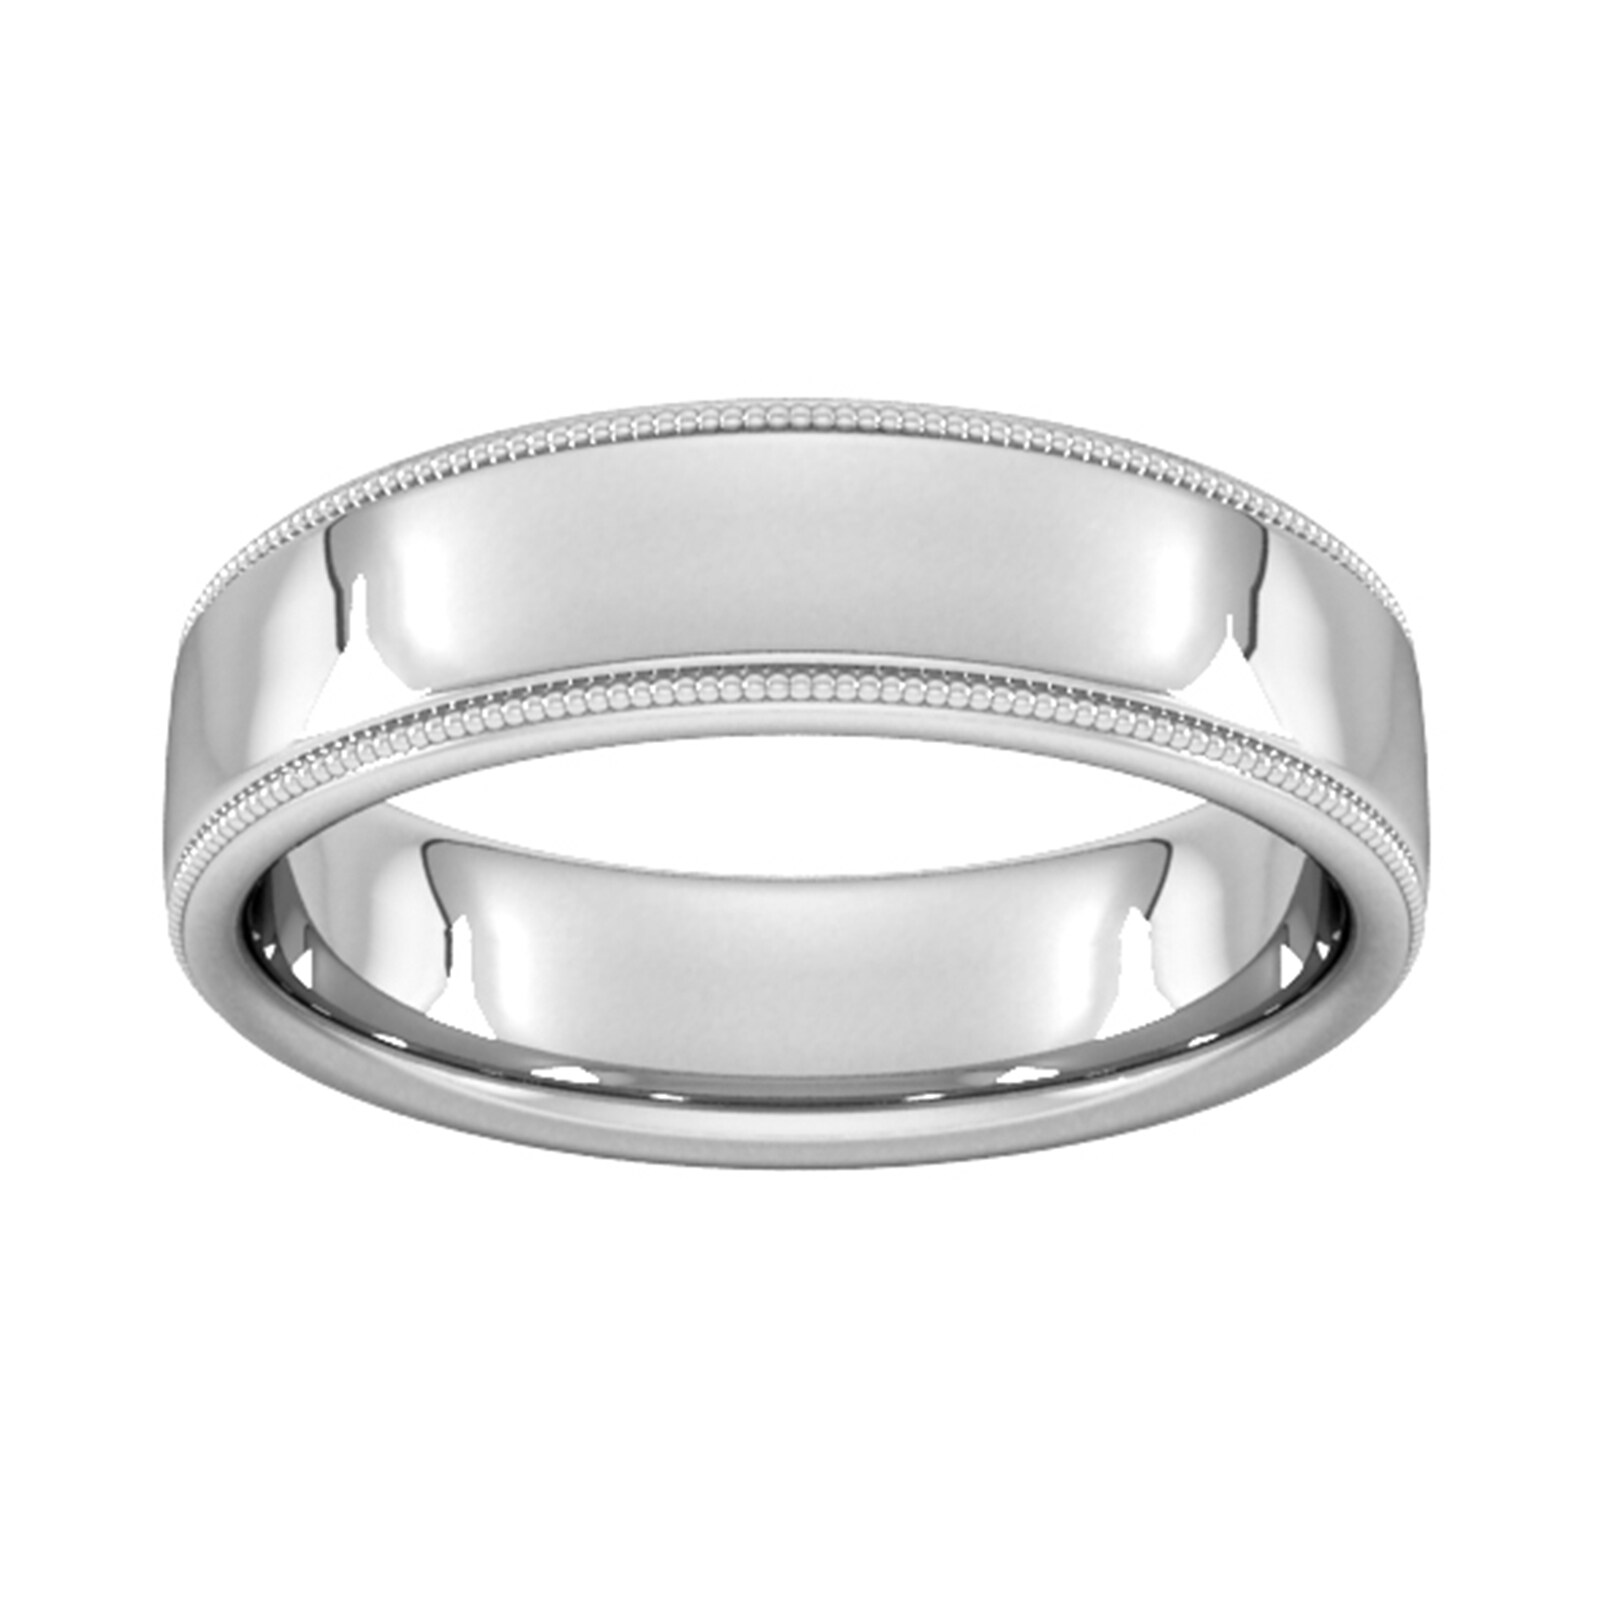 6mm Slight Court Heavy Milgrain Edge Wedding Ring In 18 Carat White Gold - Ring Size P